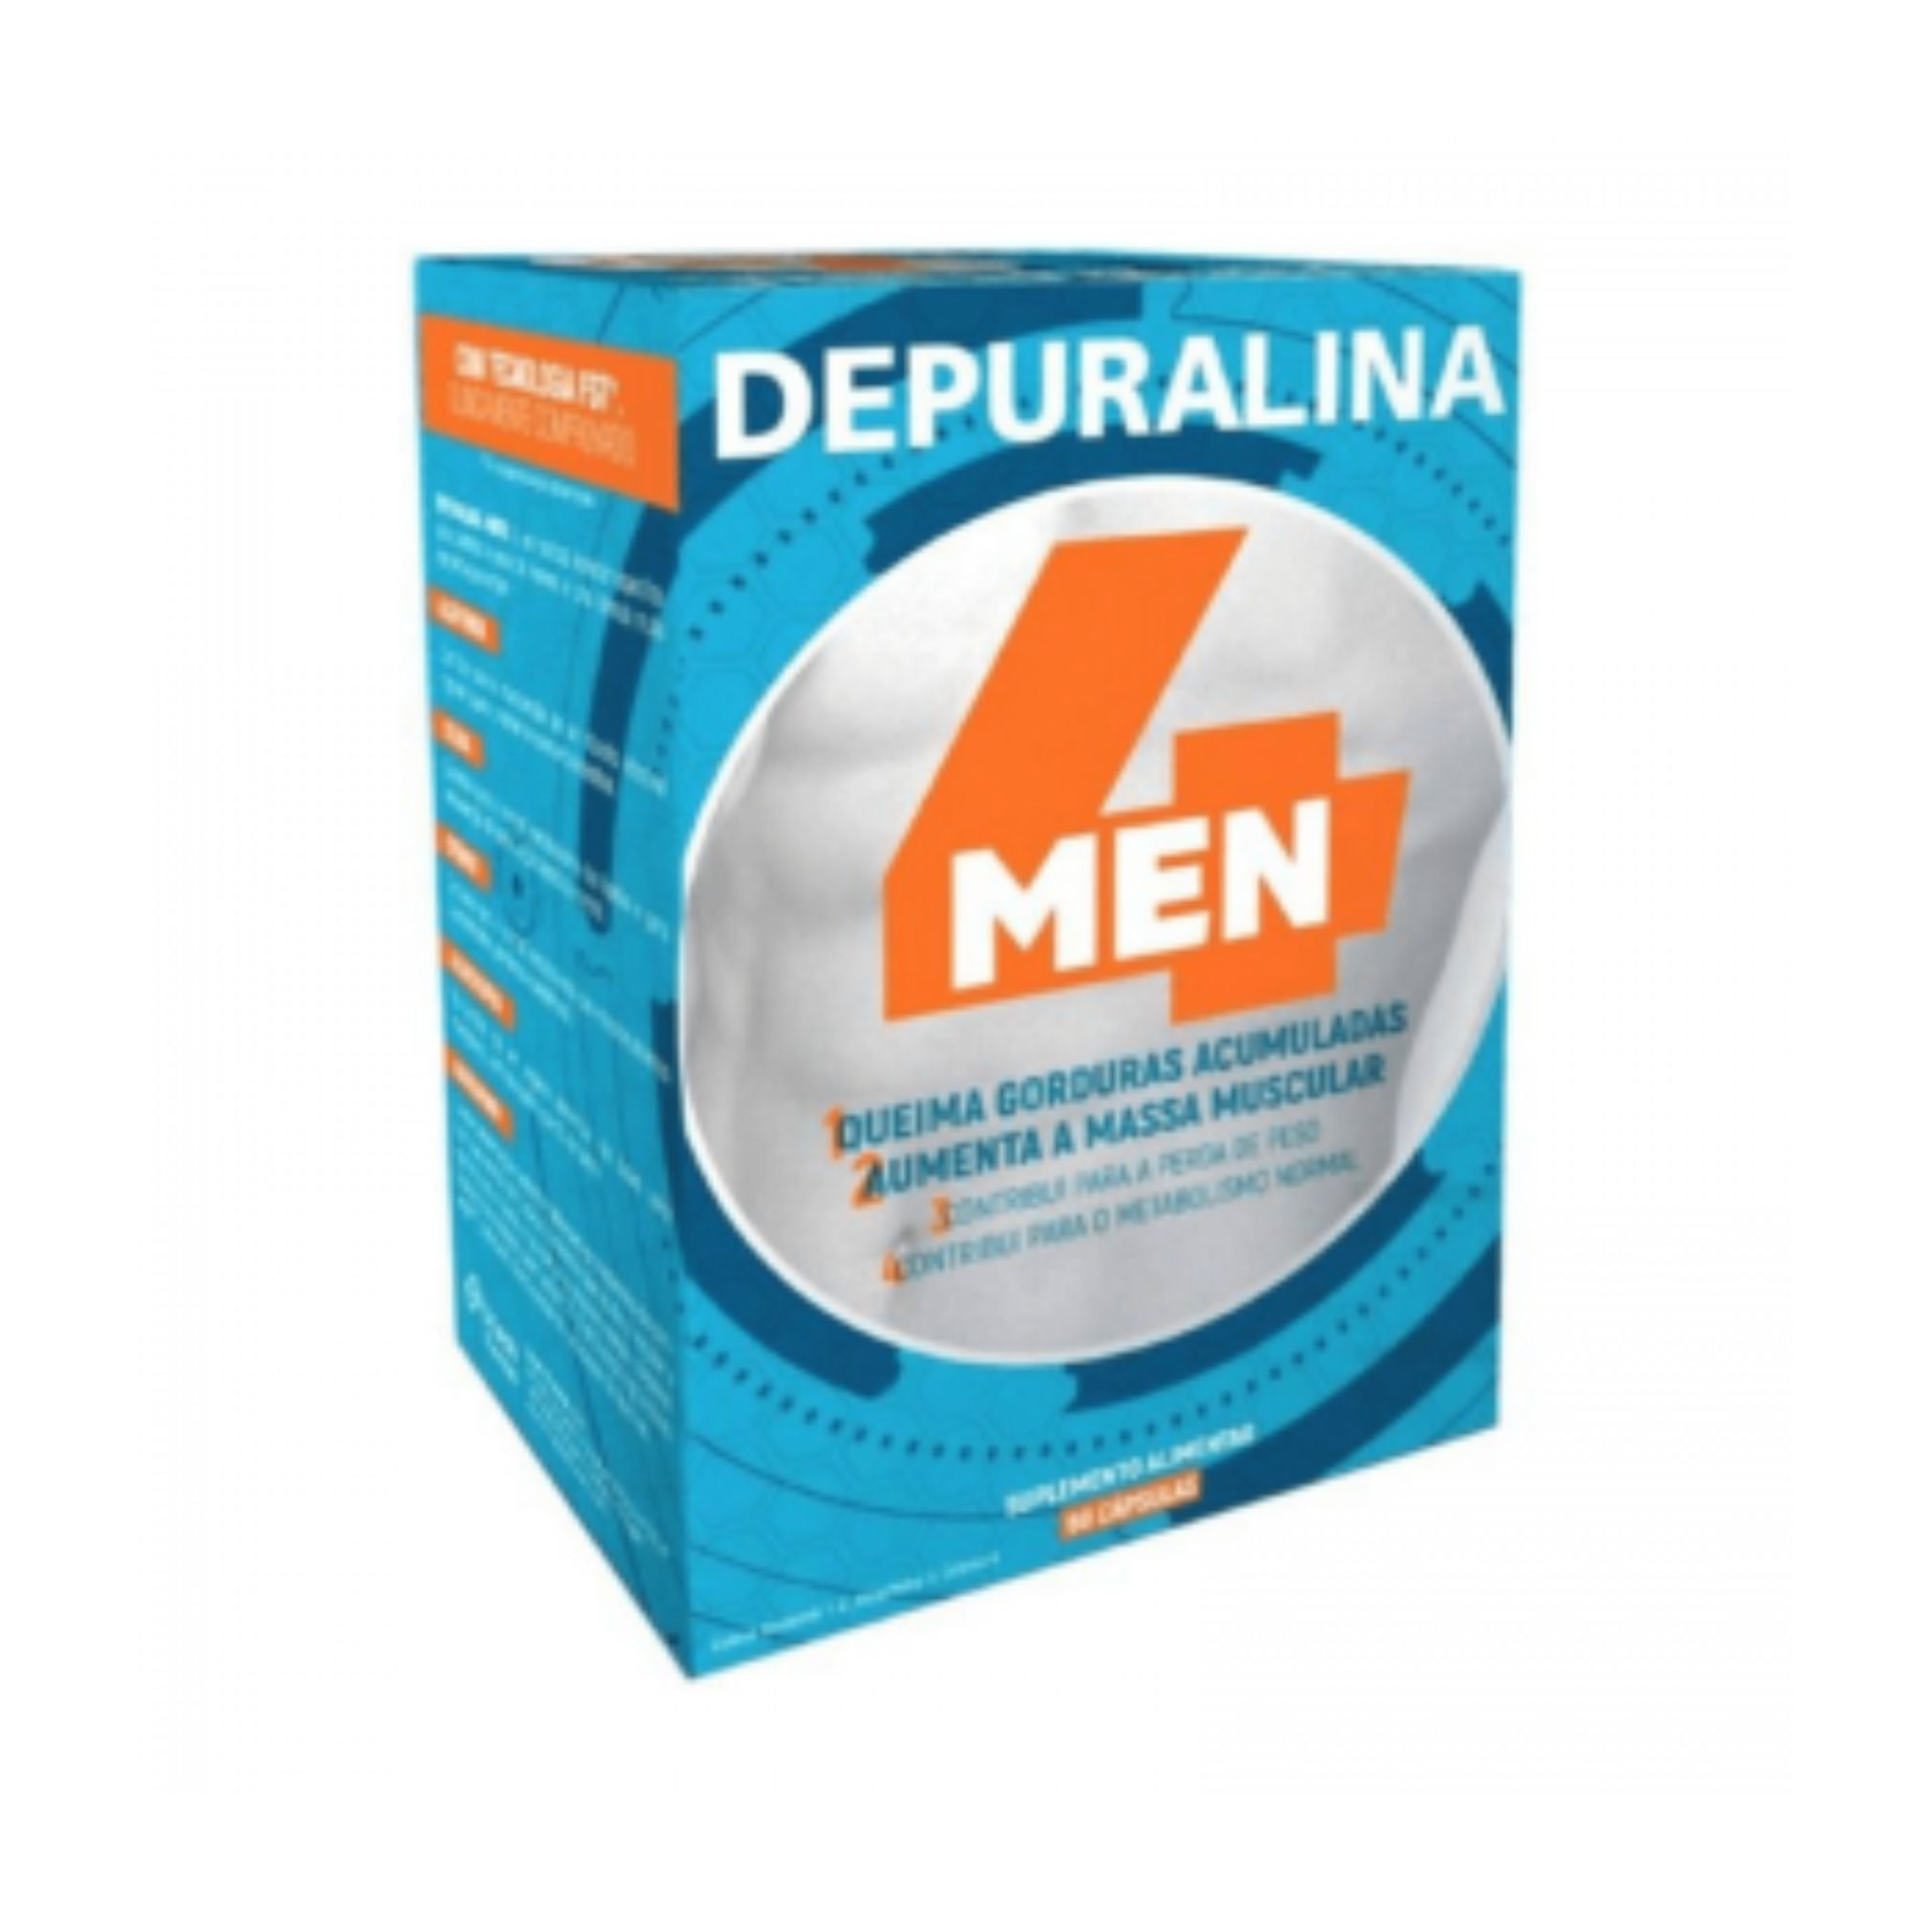 Depuralina 4 Man x60 capsules